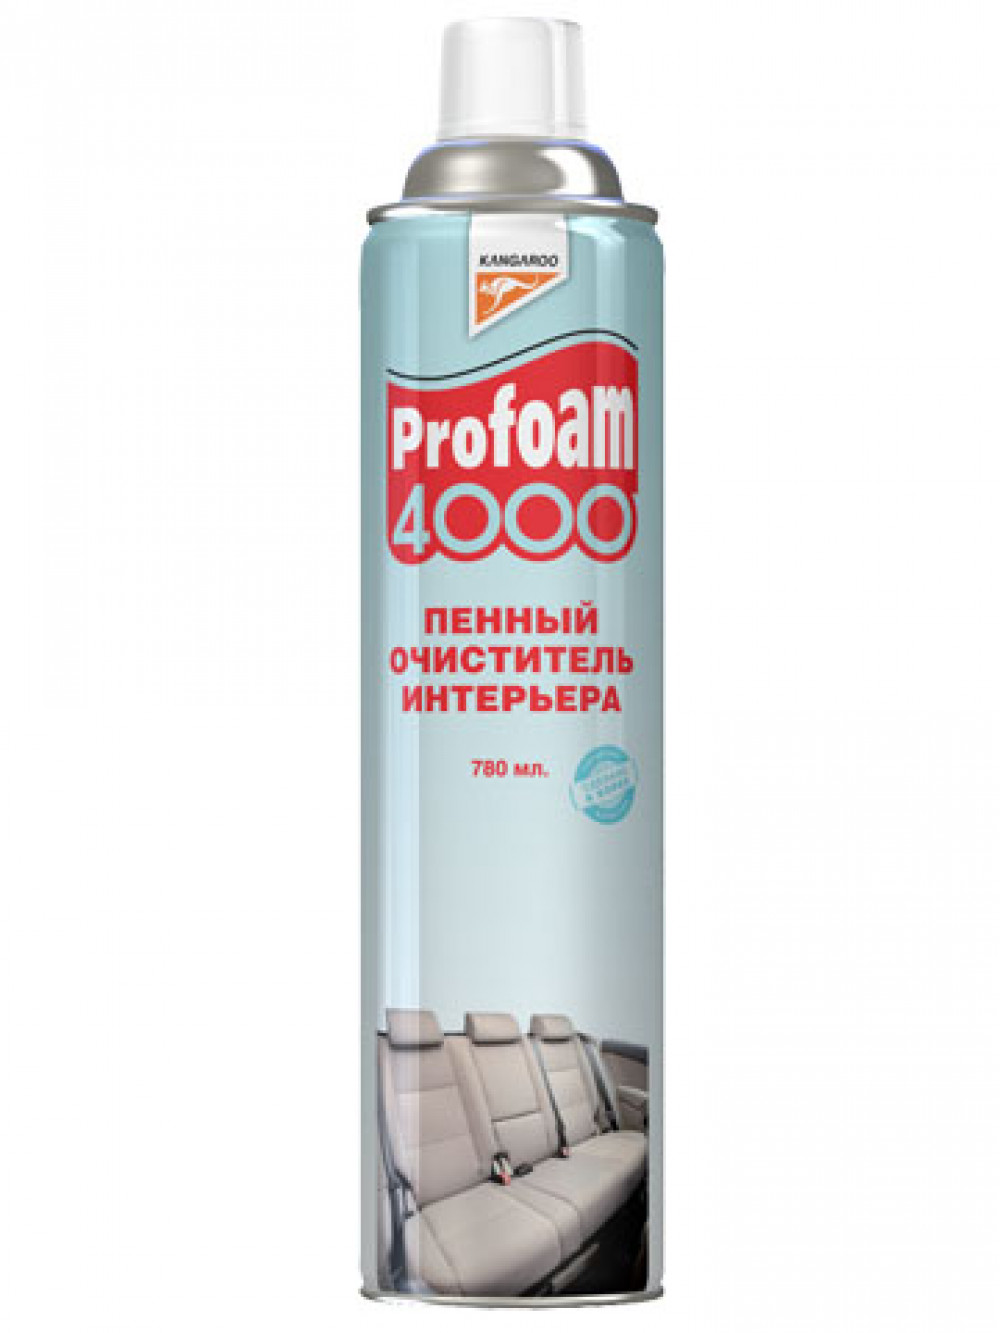 Очиститель   PROFAM -4000 (пенный очиститель интерьера)   780 мл